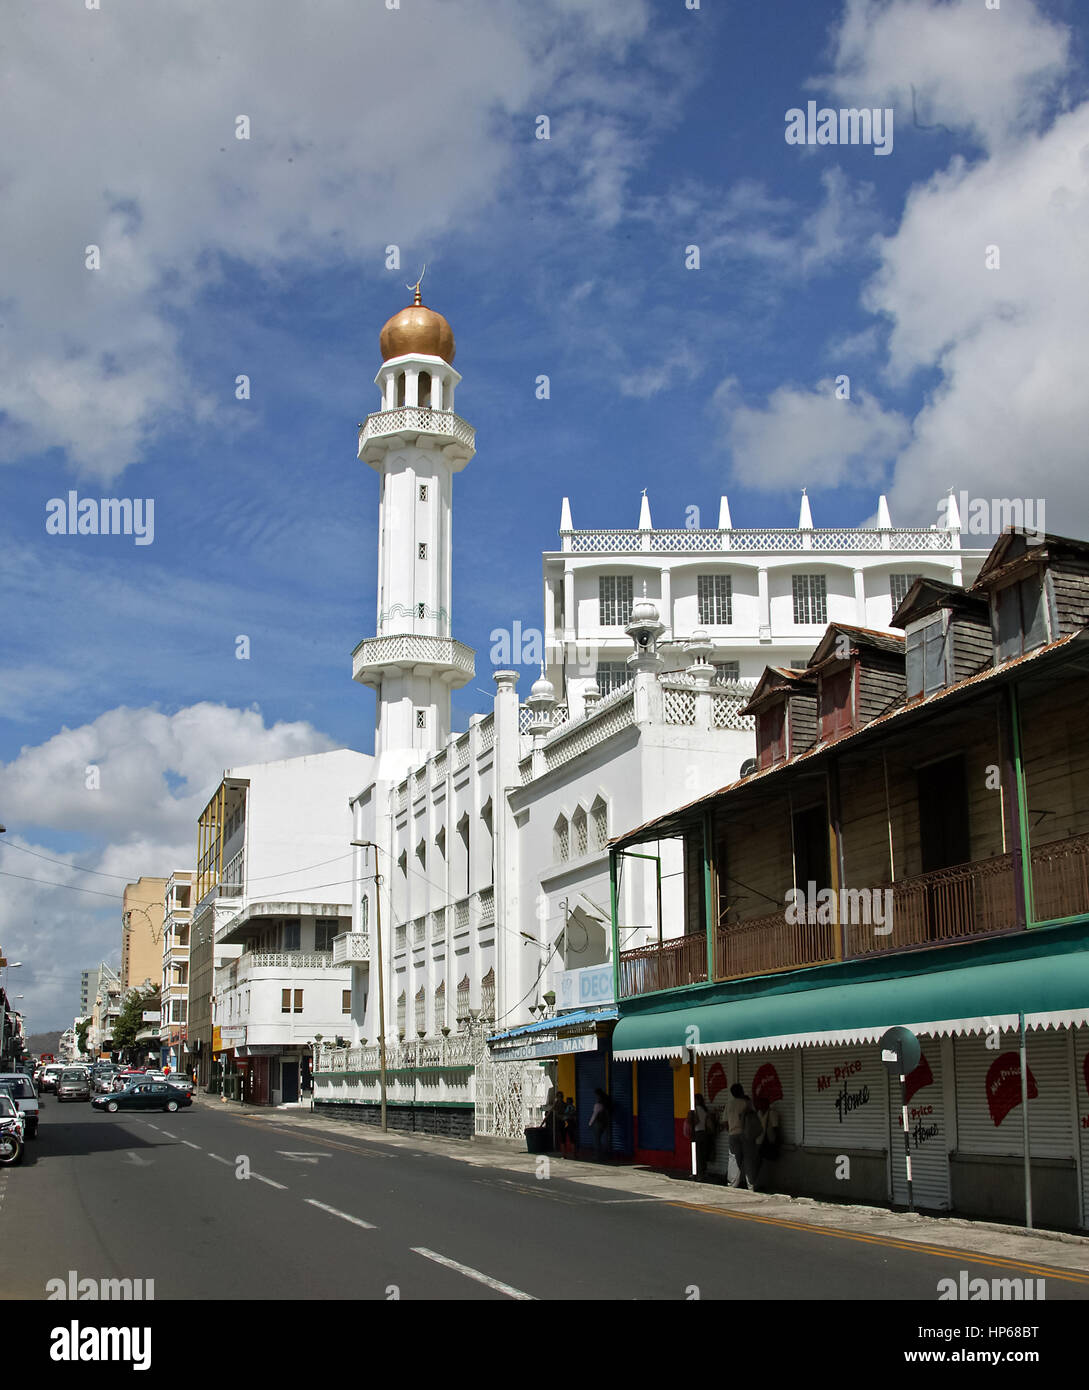 Mosquée de la vieille ville, Port Louis, Maurice, mosquée de la vieille ville, Minaret, scène de rue, ciel bleu Banque D'Images